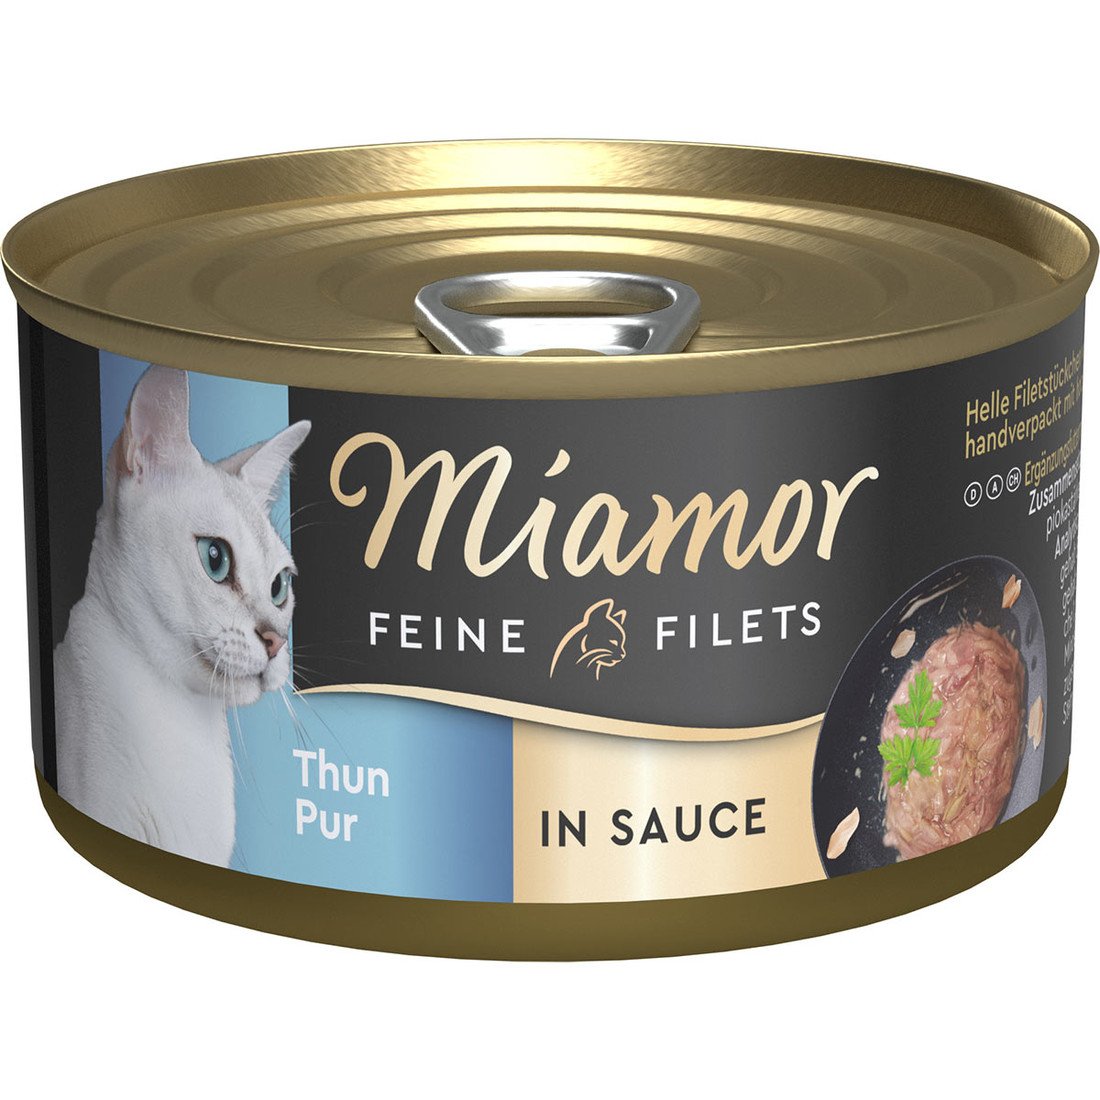 Miamor Feine Filets in Sauce Thun Pur 24x85g